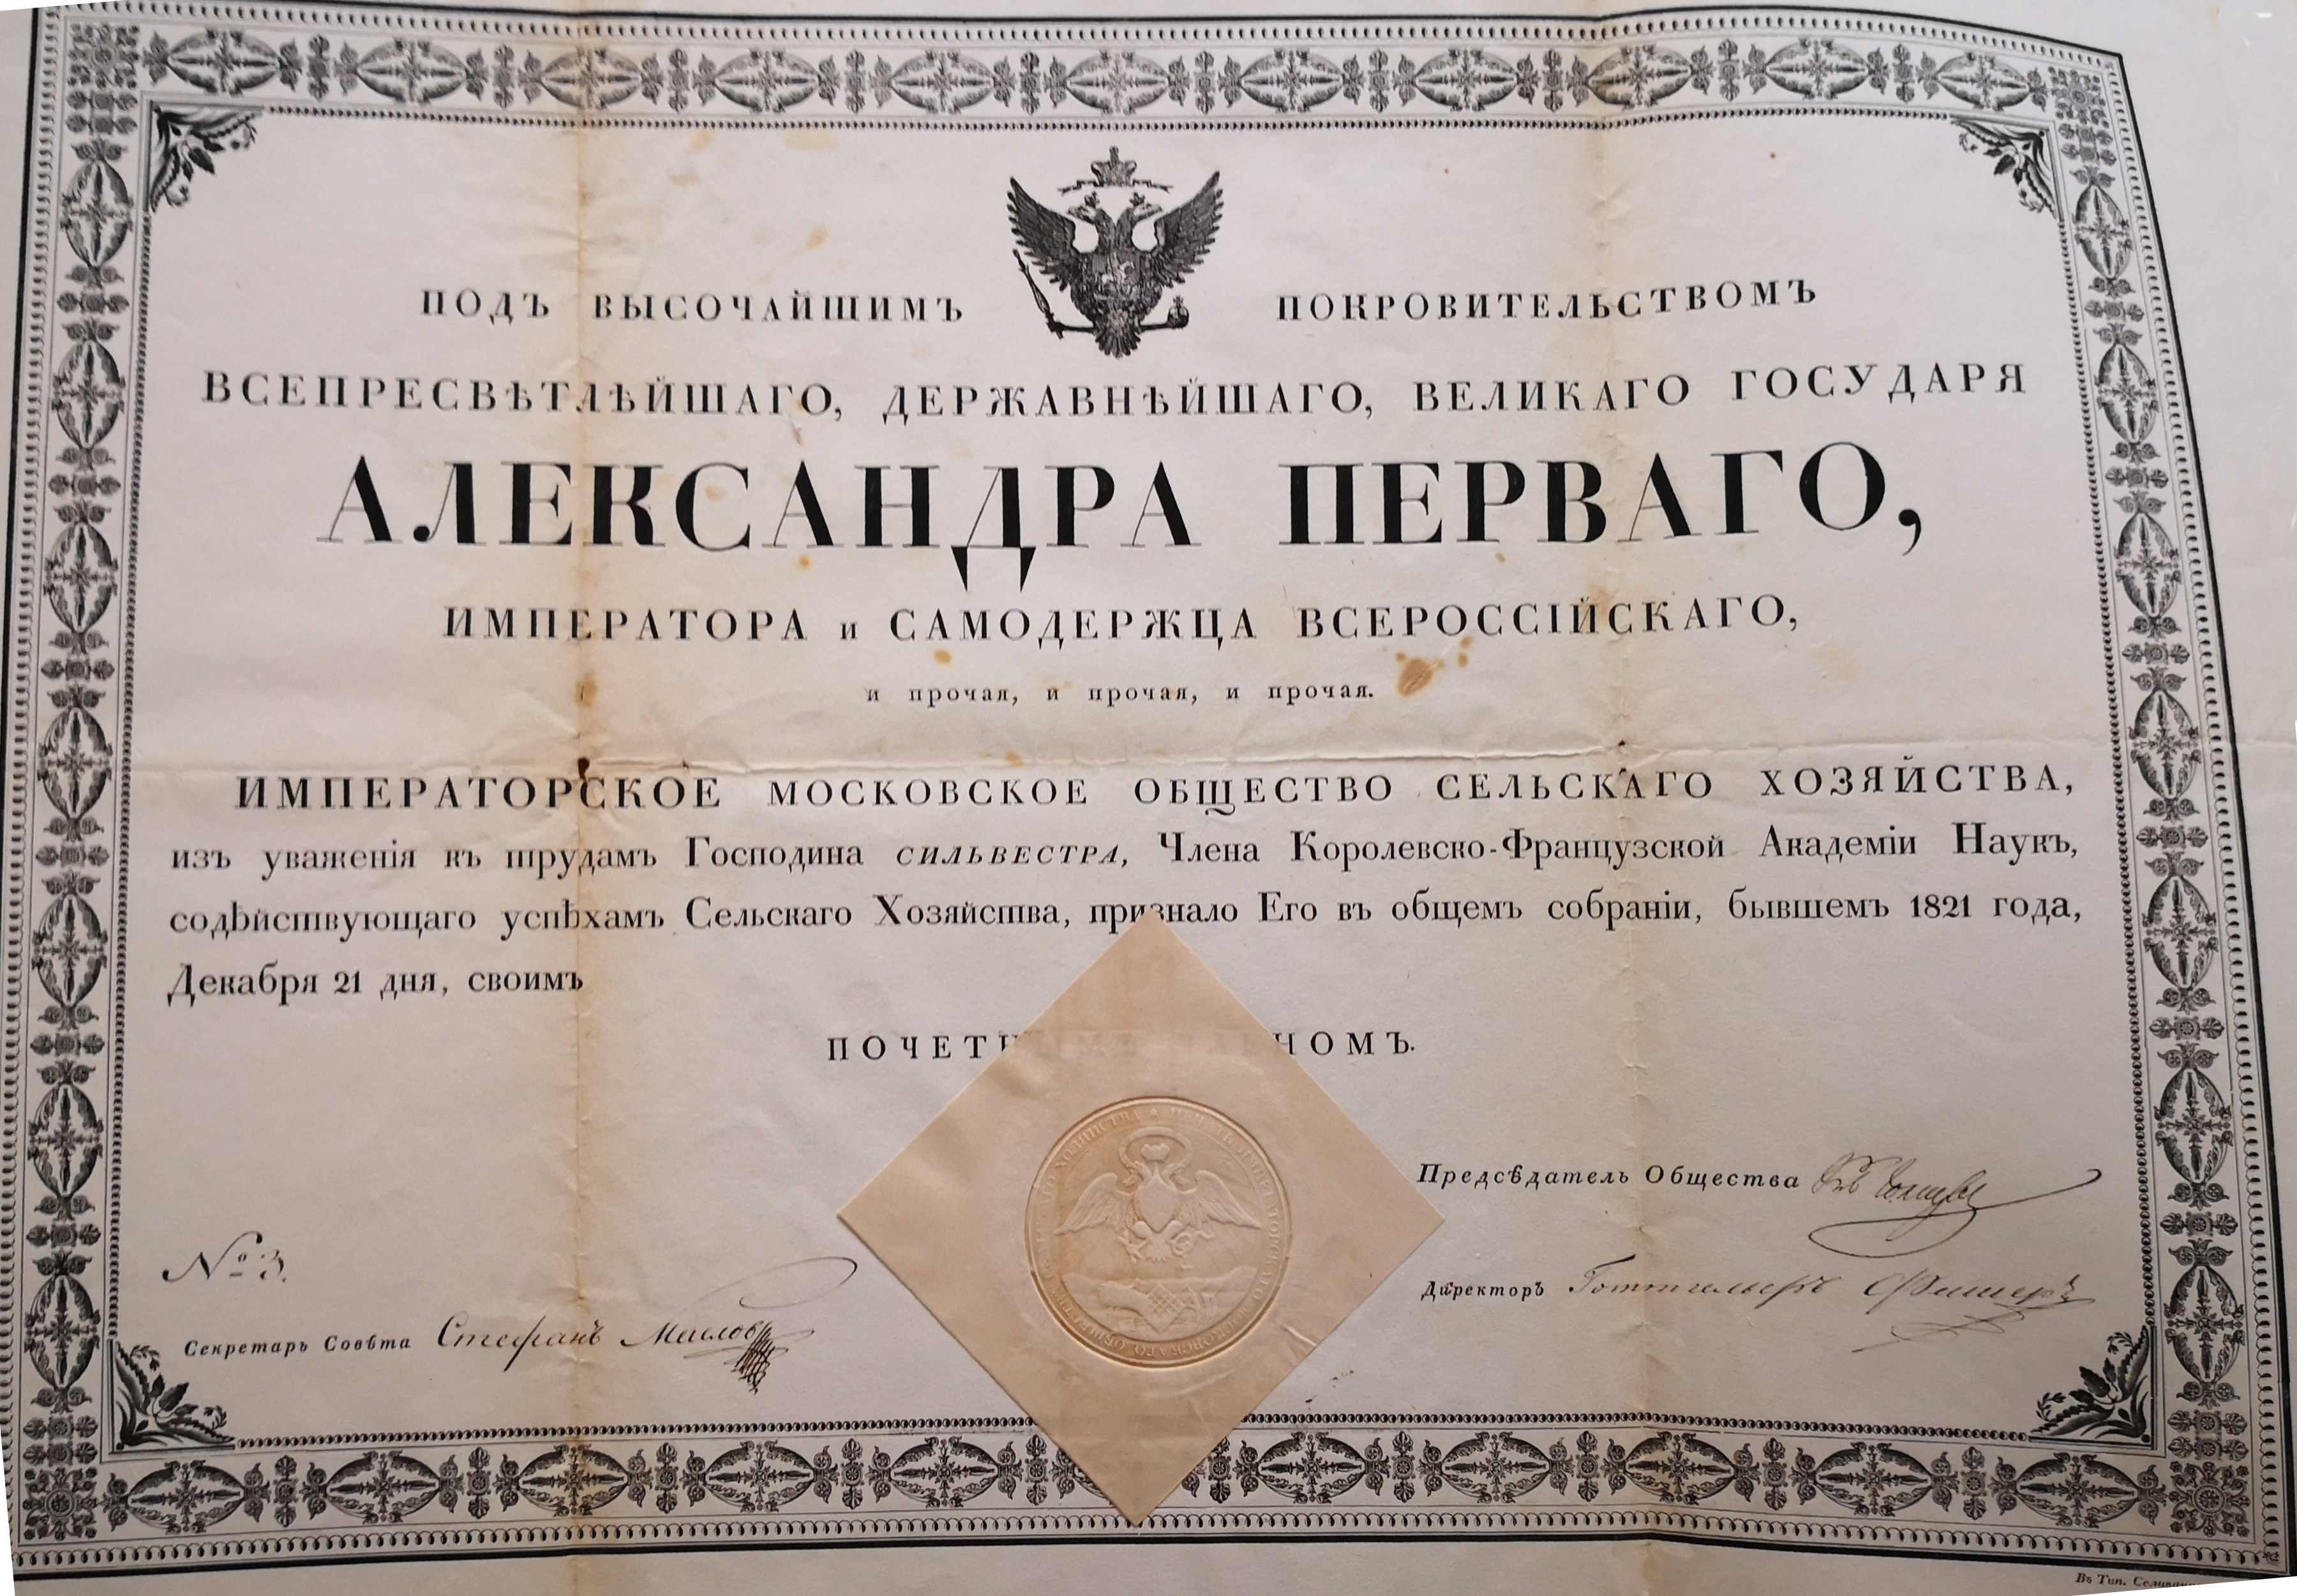  Diplôme de membre de la Société d'Agriculture Impériale de Moscou décerné à Augustin-François de Silvestre - Document 1